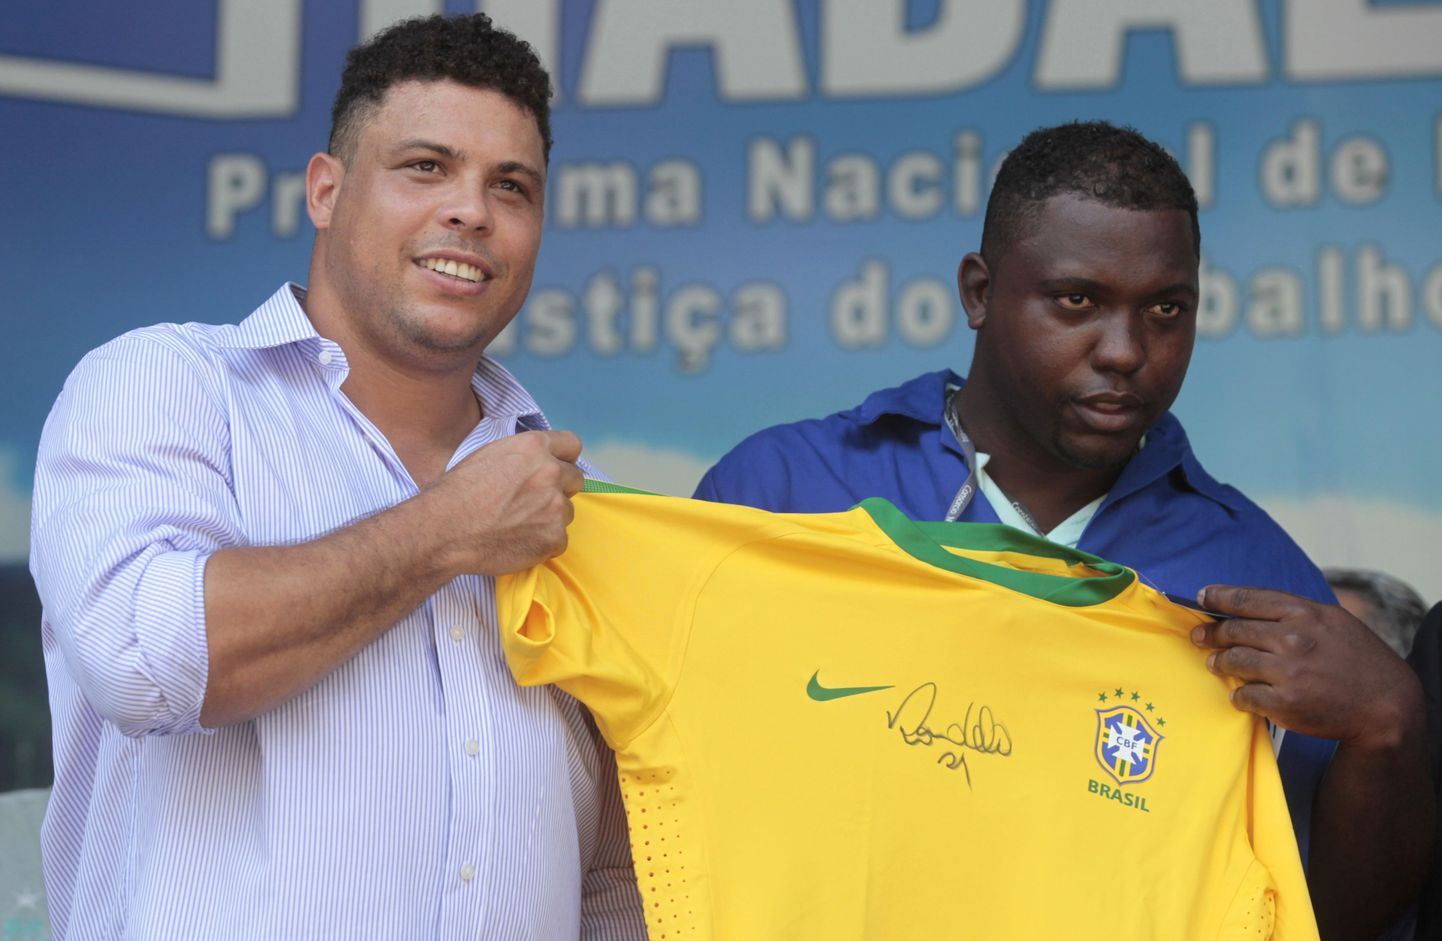 В подготовке к ЧМ-2014 в Бразилии участвует даже Роналдо, но дело пока не спорится.